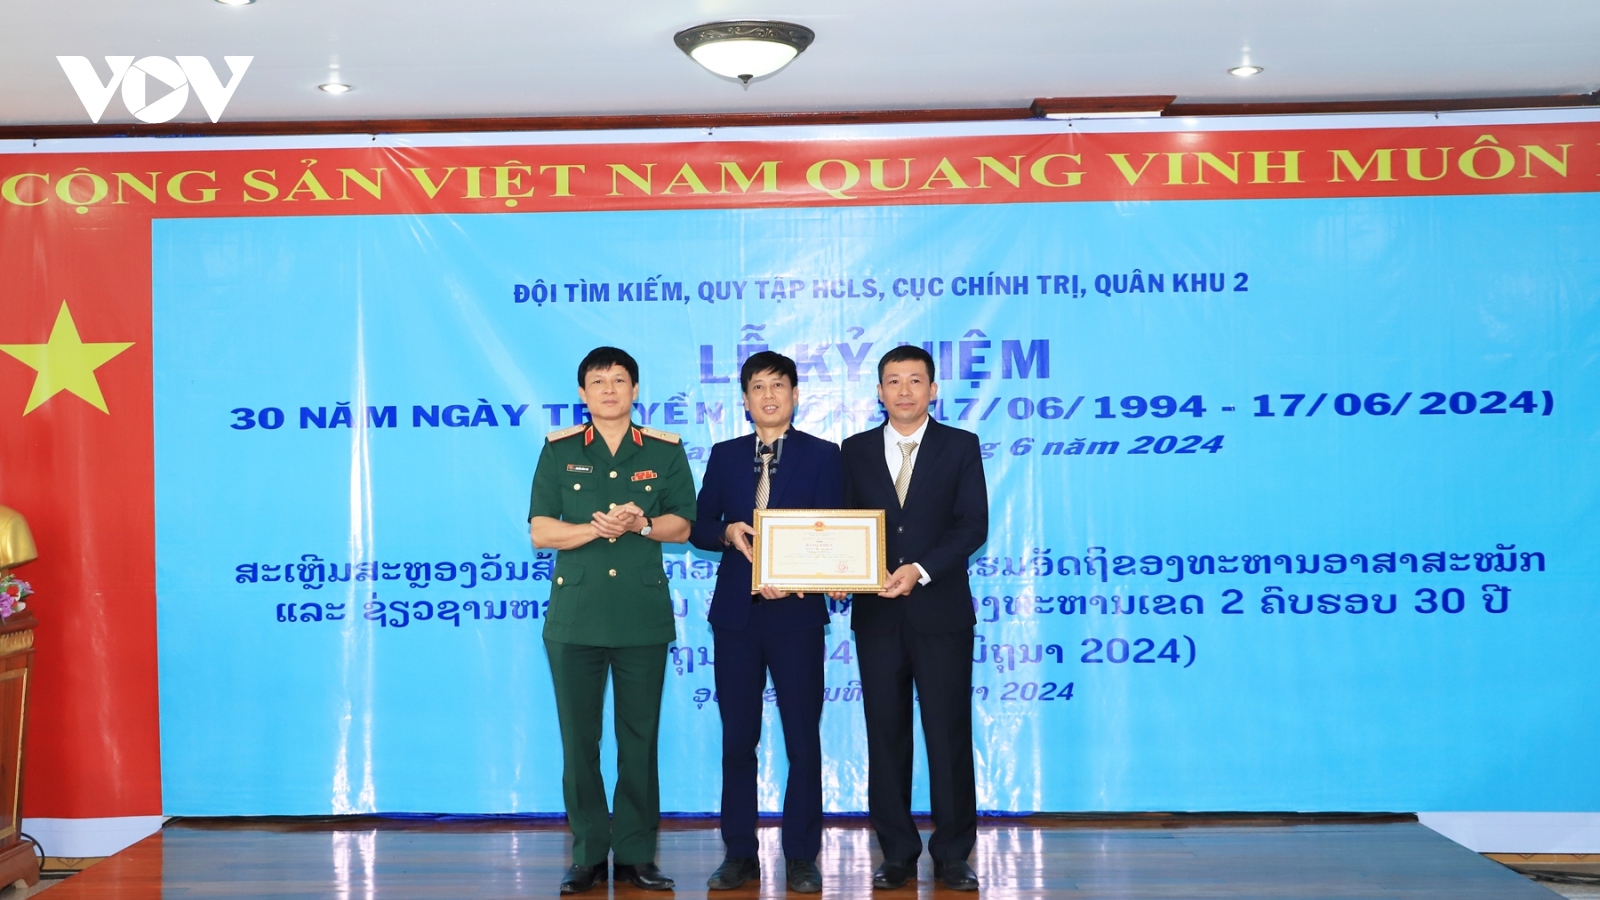 Kỷ niệm Ngày truyền thống Đội tìm kiếm, quy tập hài cốt liệt sĩ Quân khu 2 ở Lào